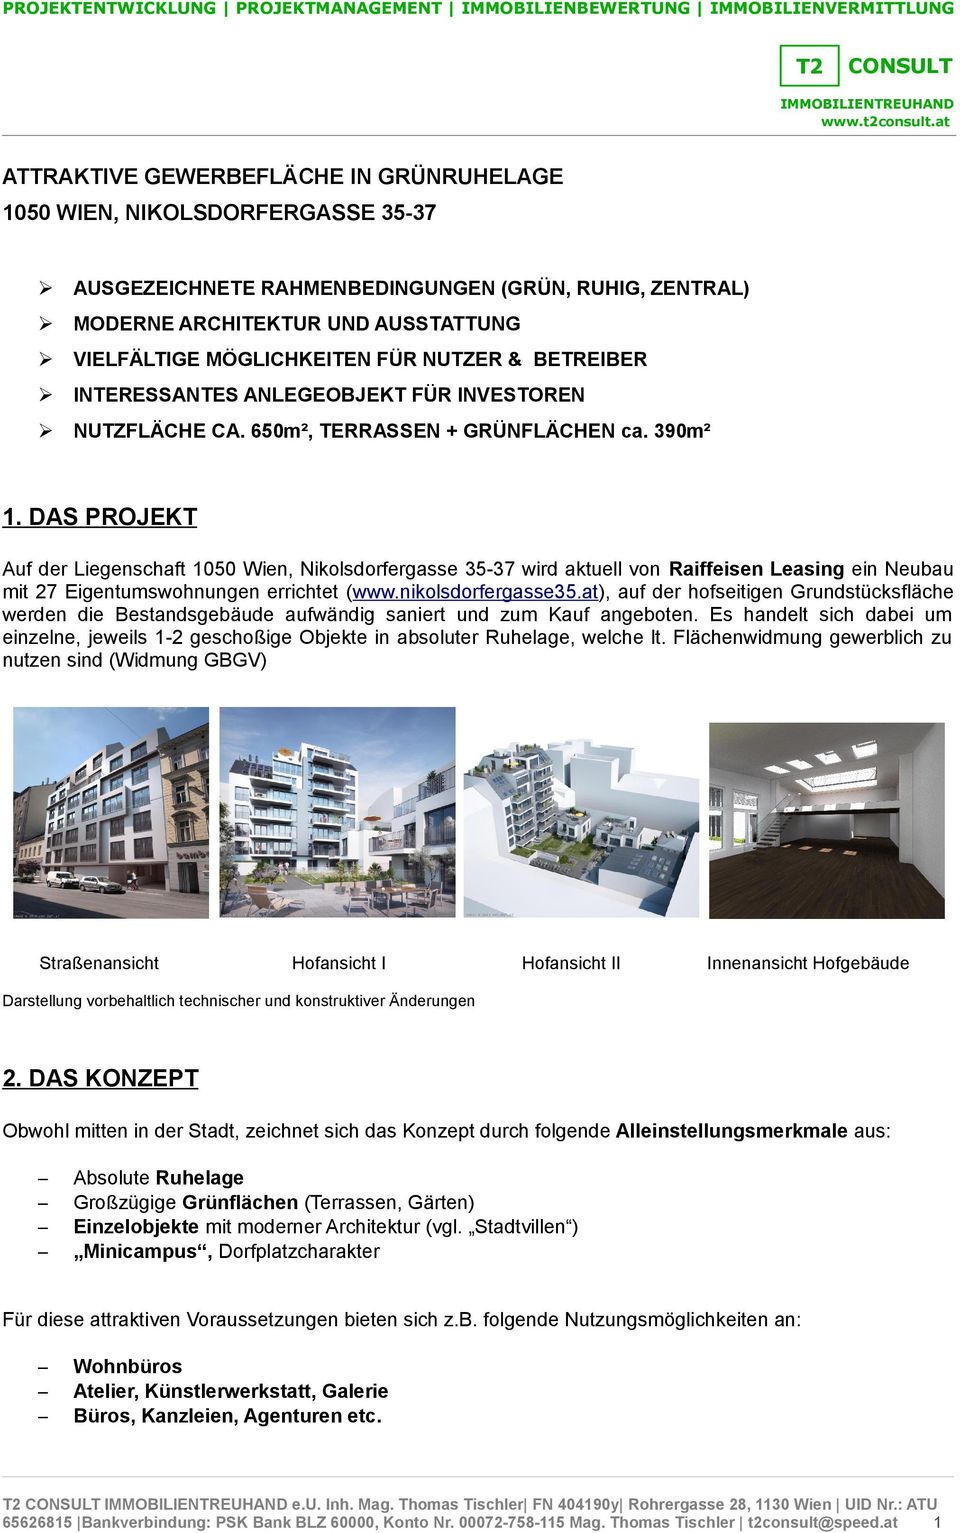 DAS PROJEKT Auf der Liegenschaft 1050 Wien, Nikolsdorfergasse 35-37 wird aktuell von Raiffeisen Leasing ein Neubau mit 27 Eigentumswohnungen errichtet (www.nikolsdorfergasse35.